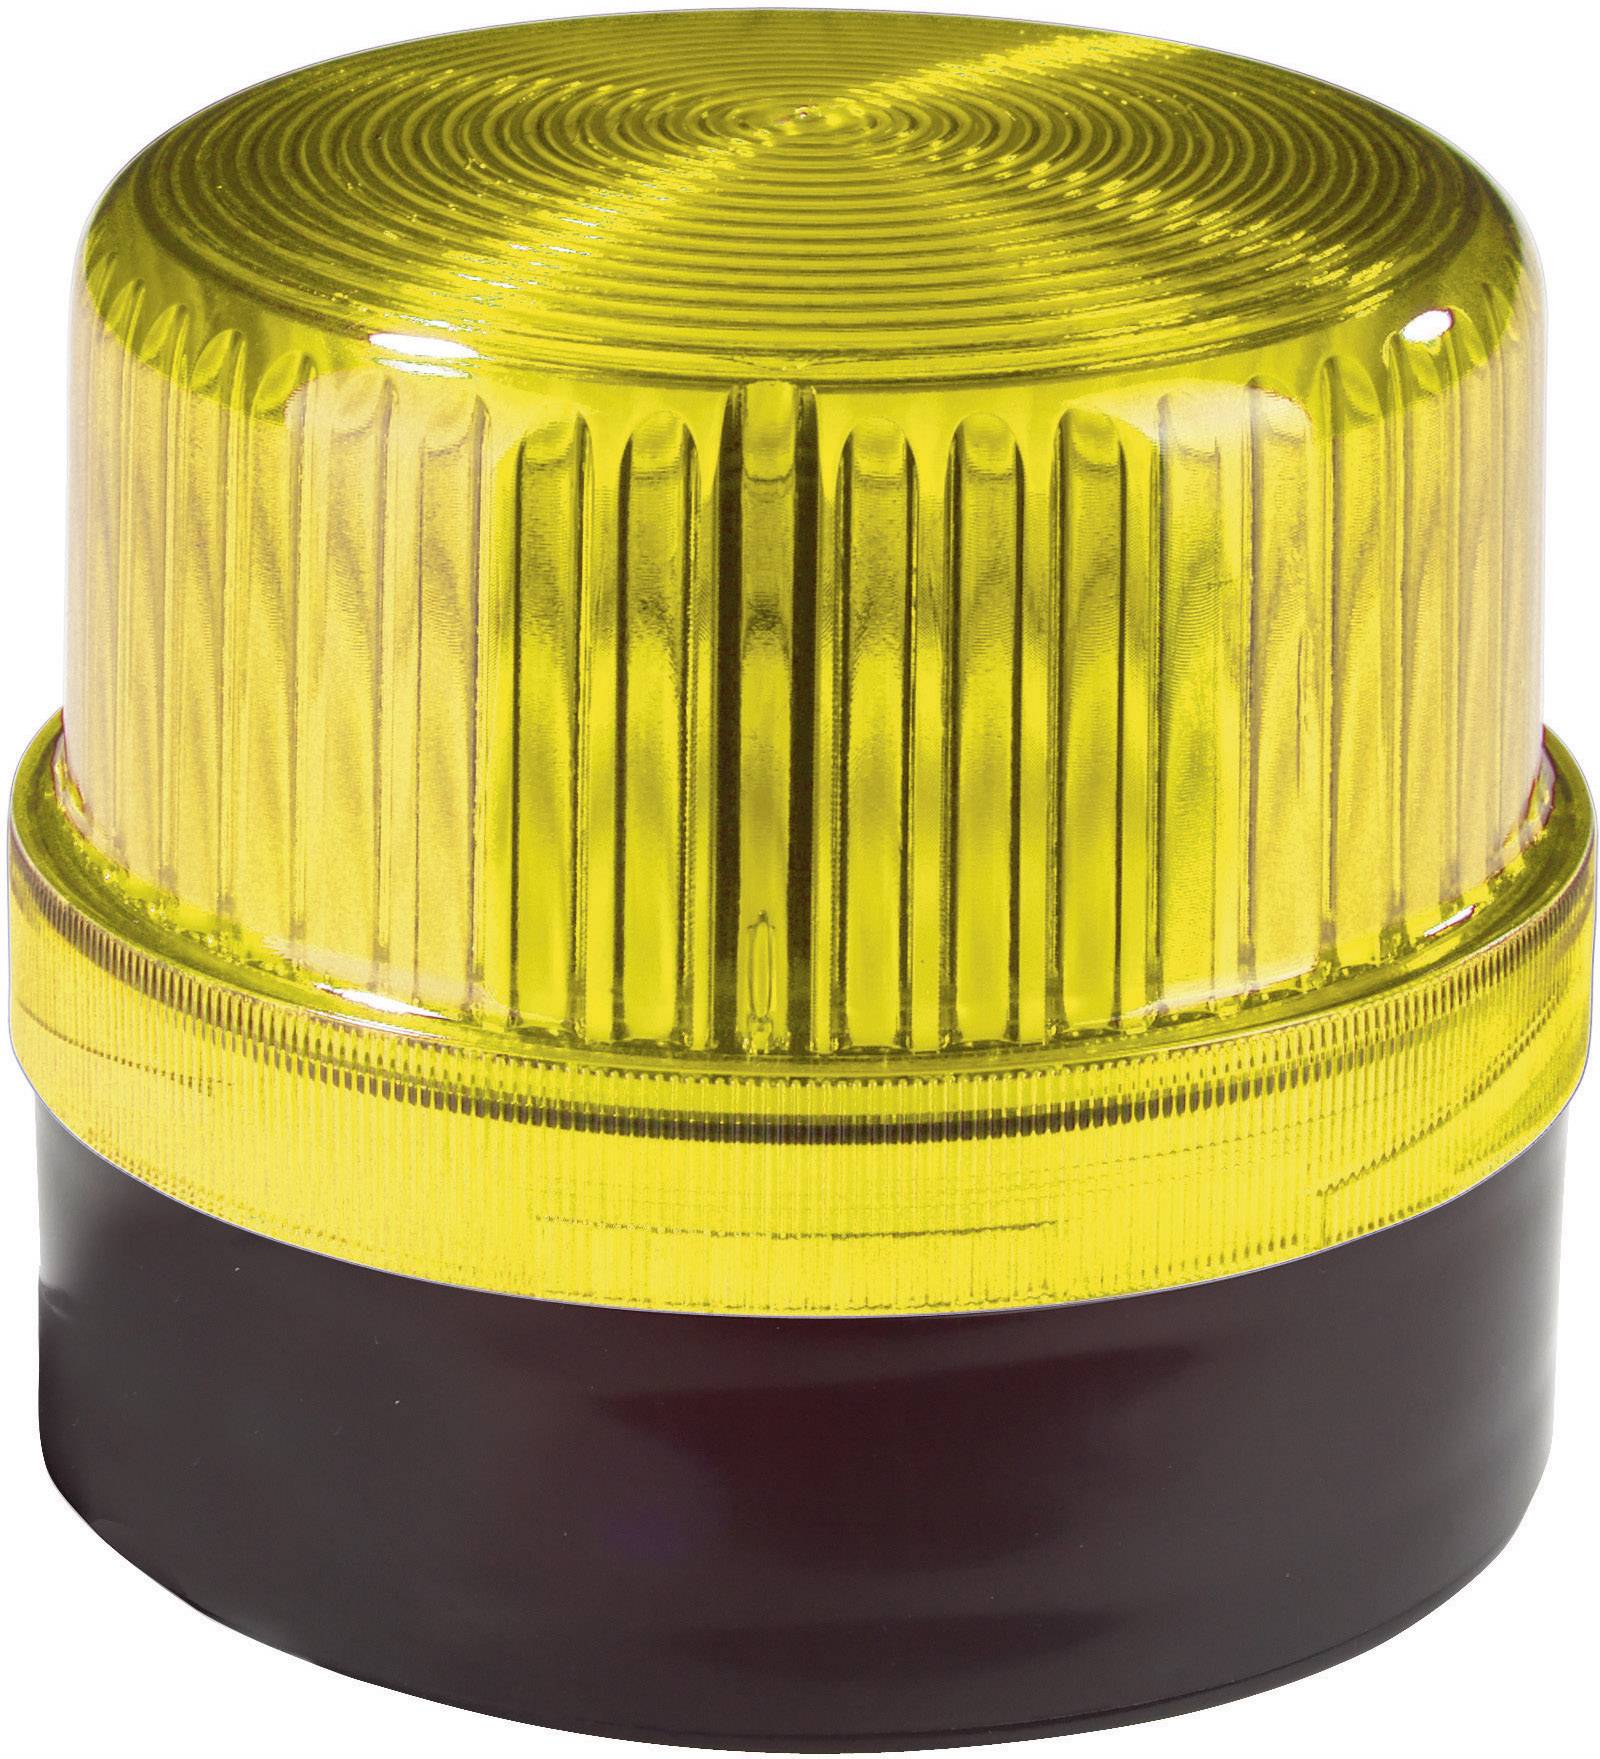 AUER SIGNAL Signalleuchte Auer Signalgeräte WLG Gelb Gelb Dauerlicht 230 V/AC